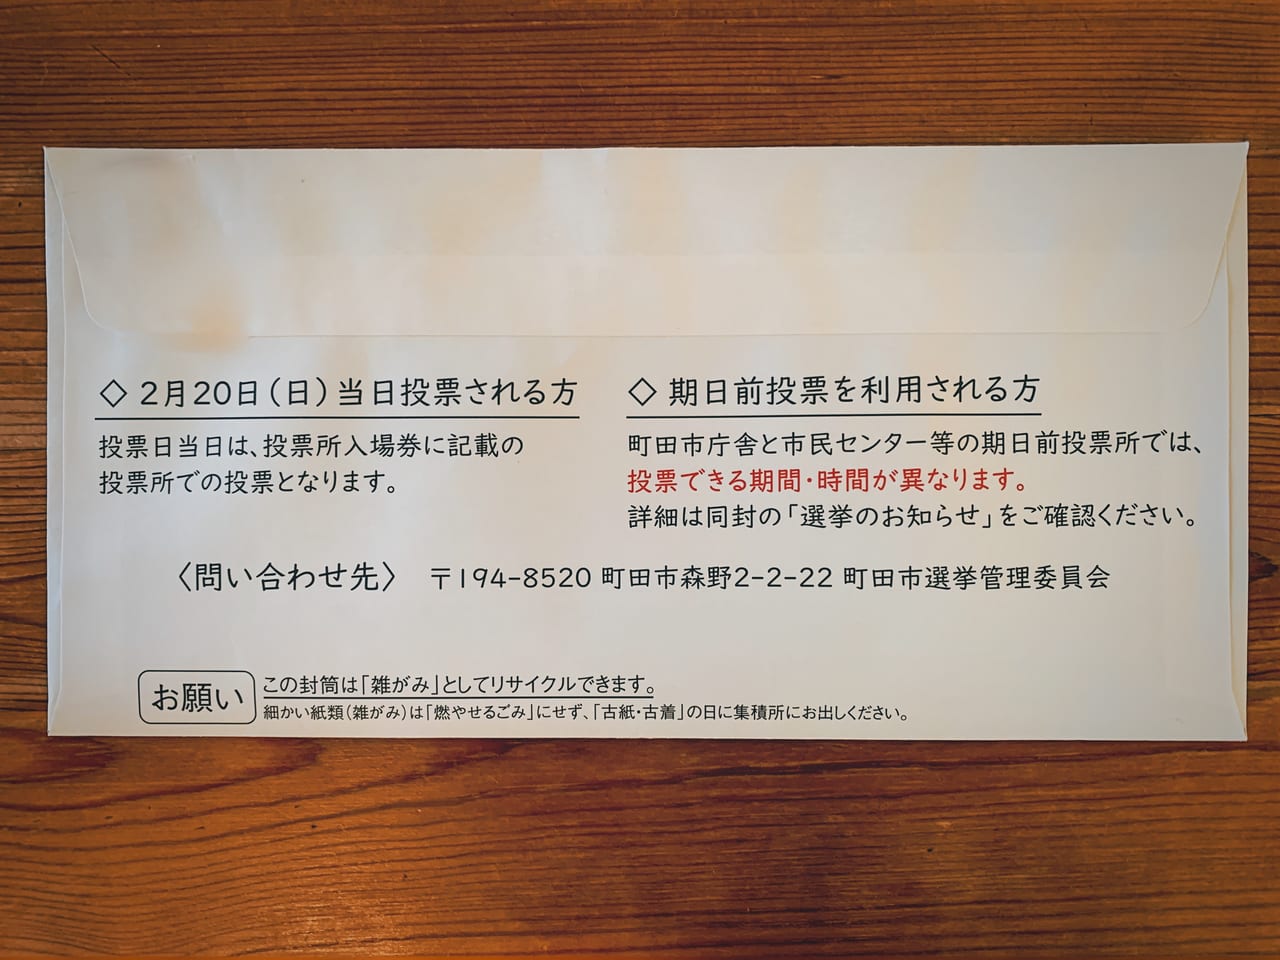 町田市選挙の投票場入場券の裏